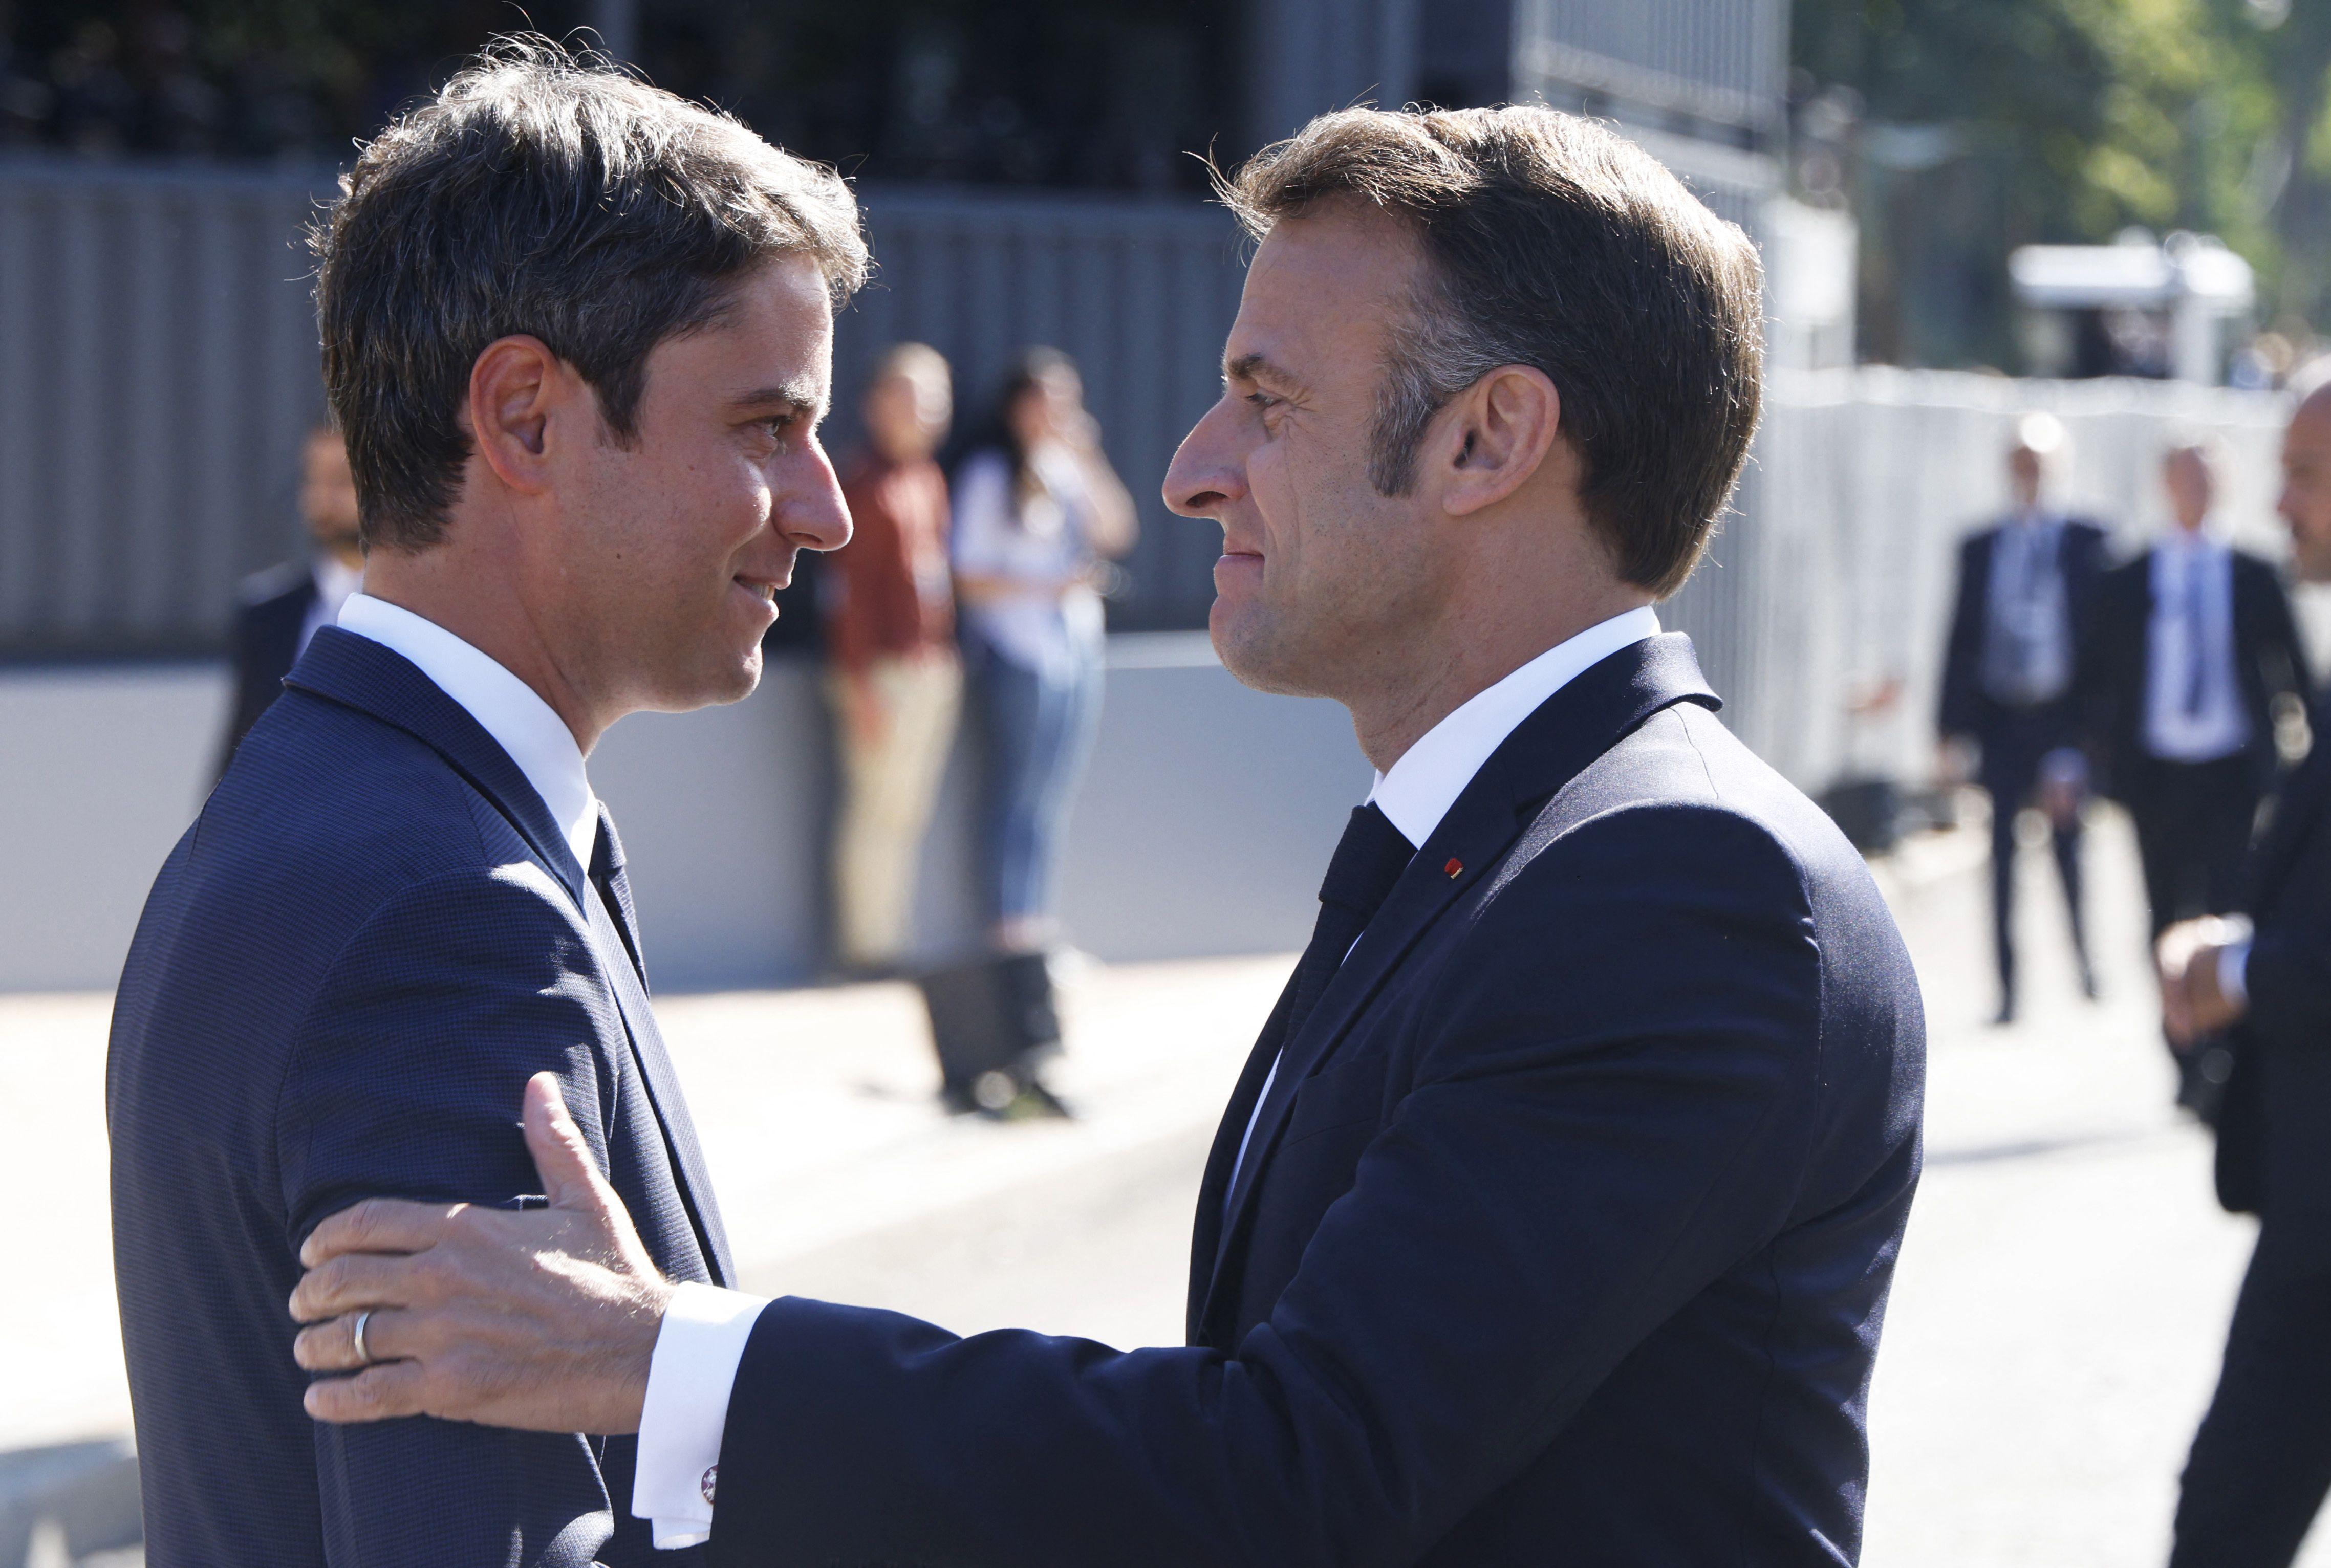 Francia - Macron accetta dimissioni governo Attal: resta in carica per affari correnti